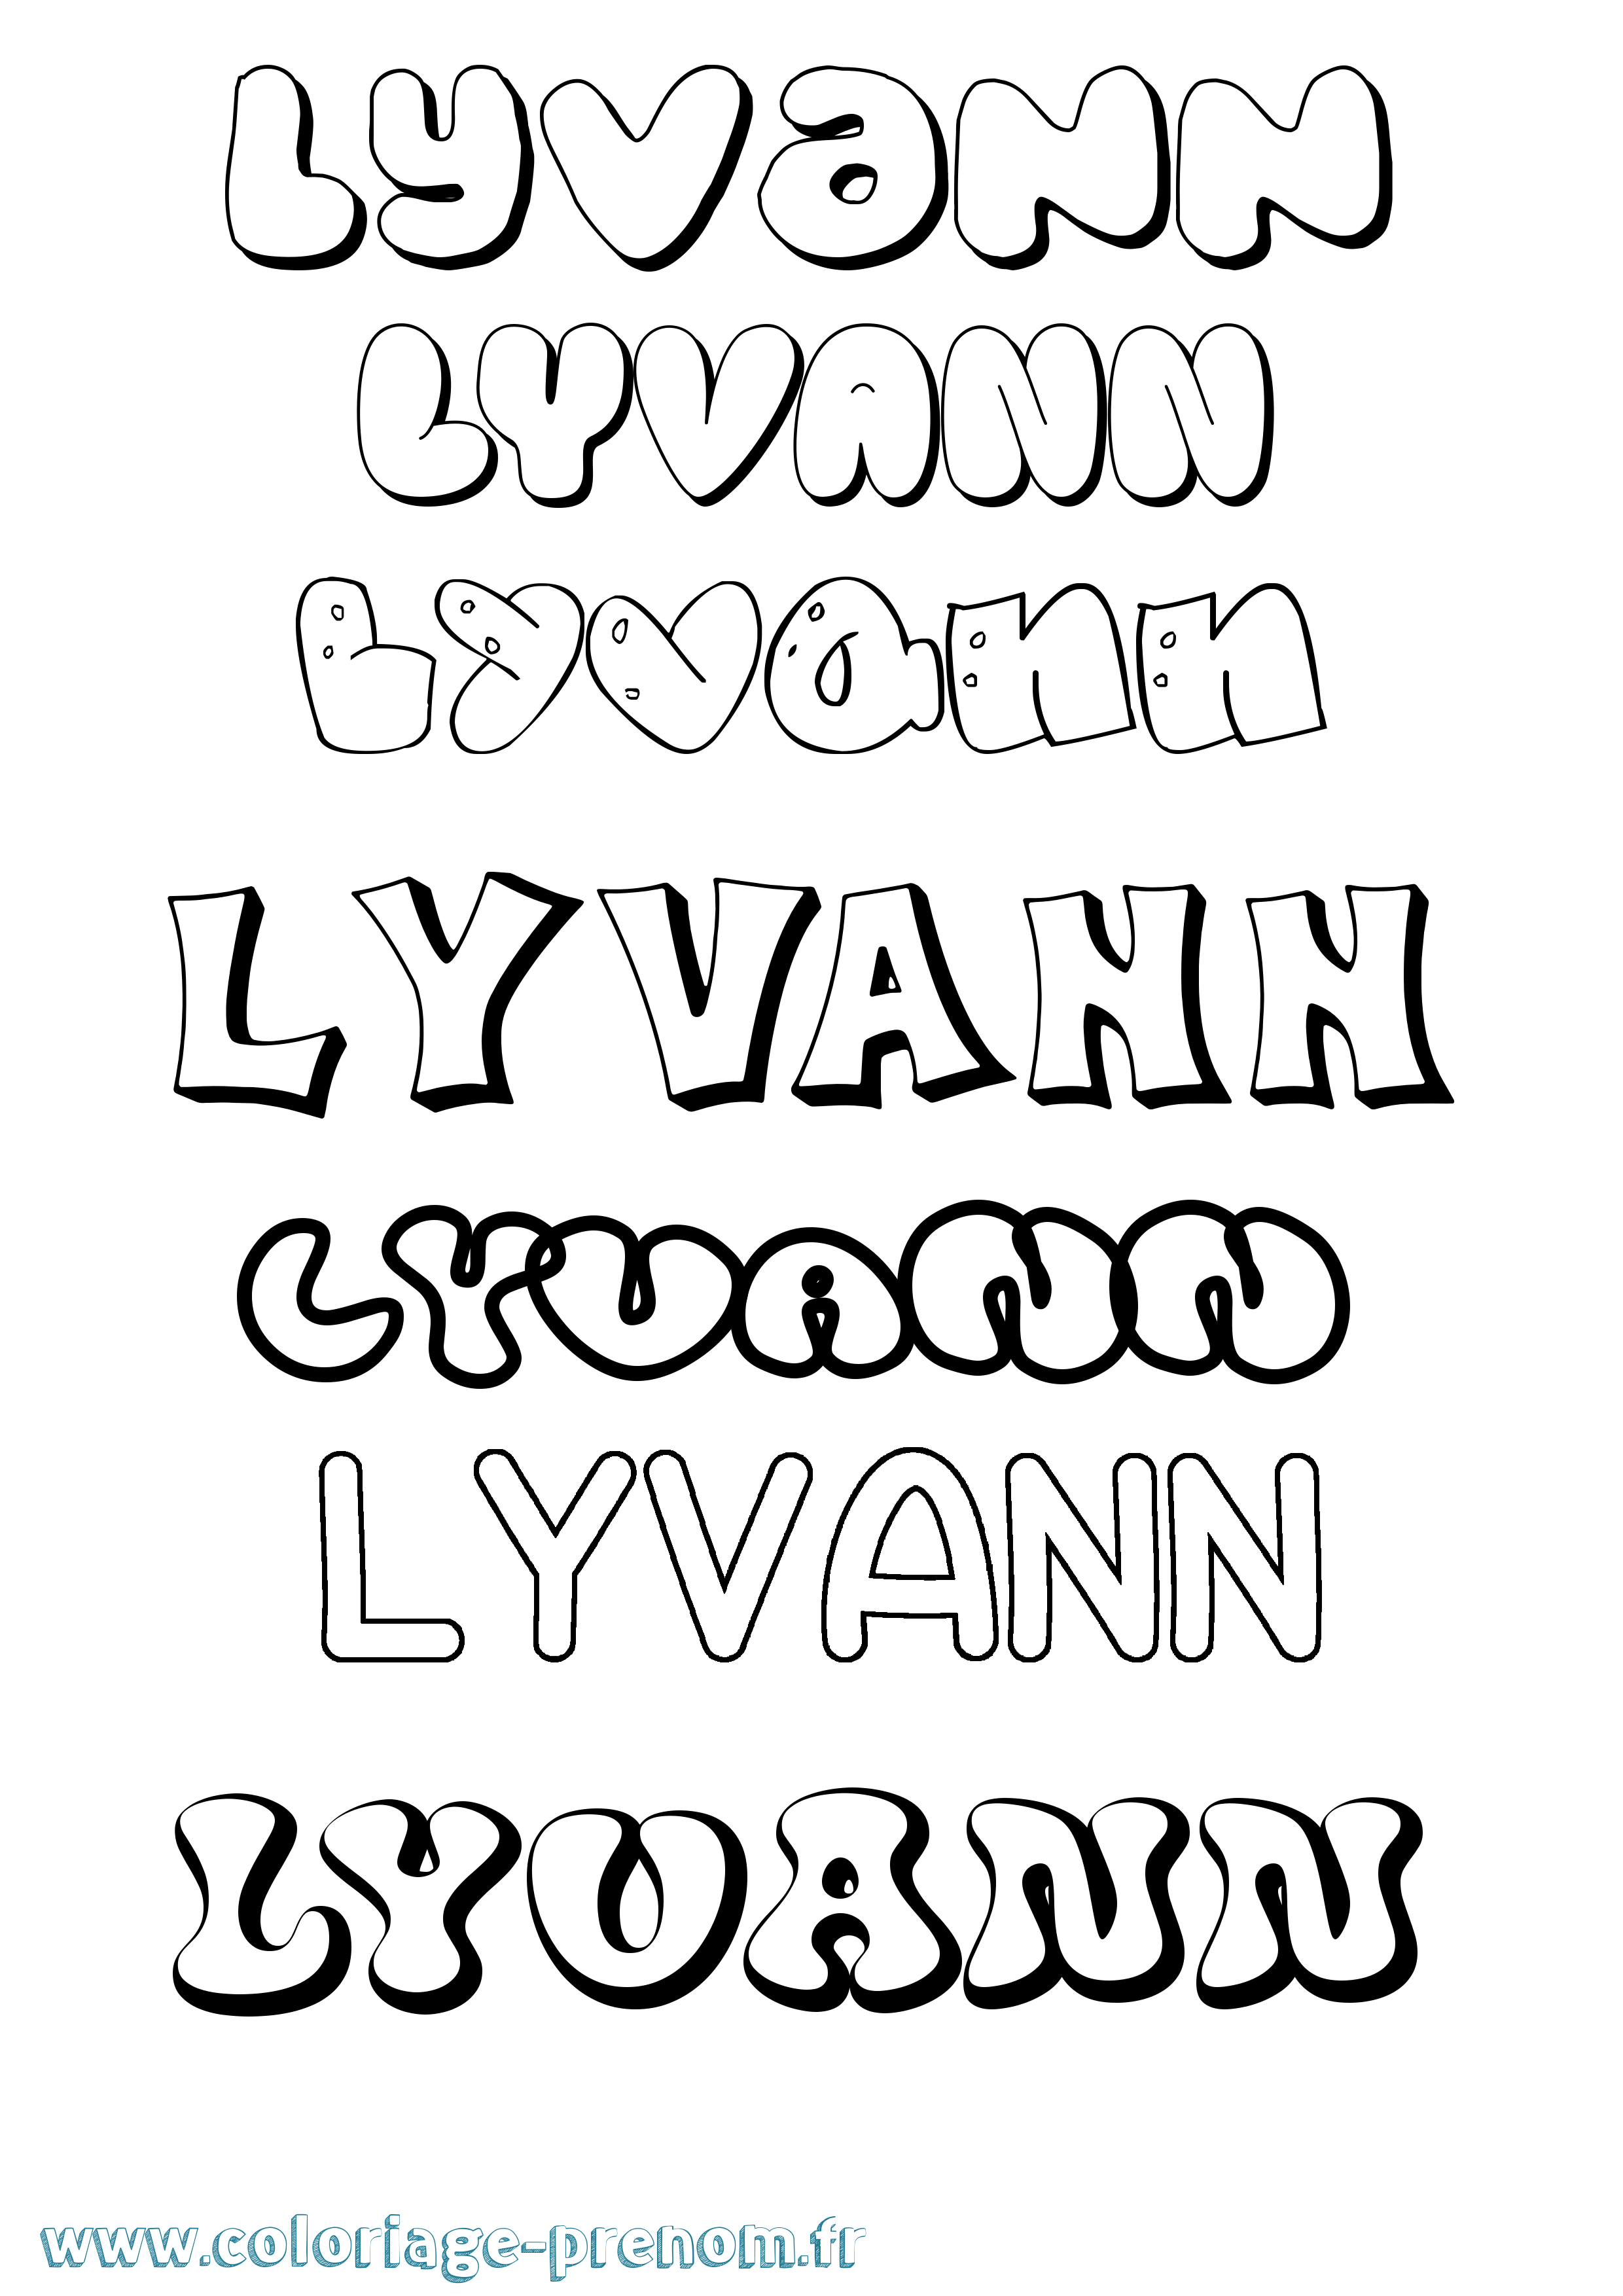 Coloriage prénom Lyvann Bubble